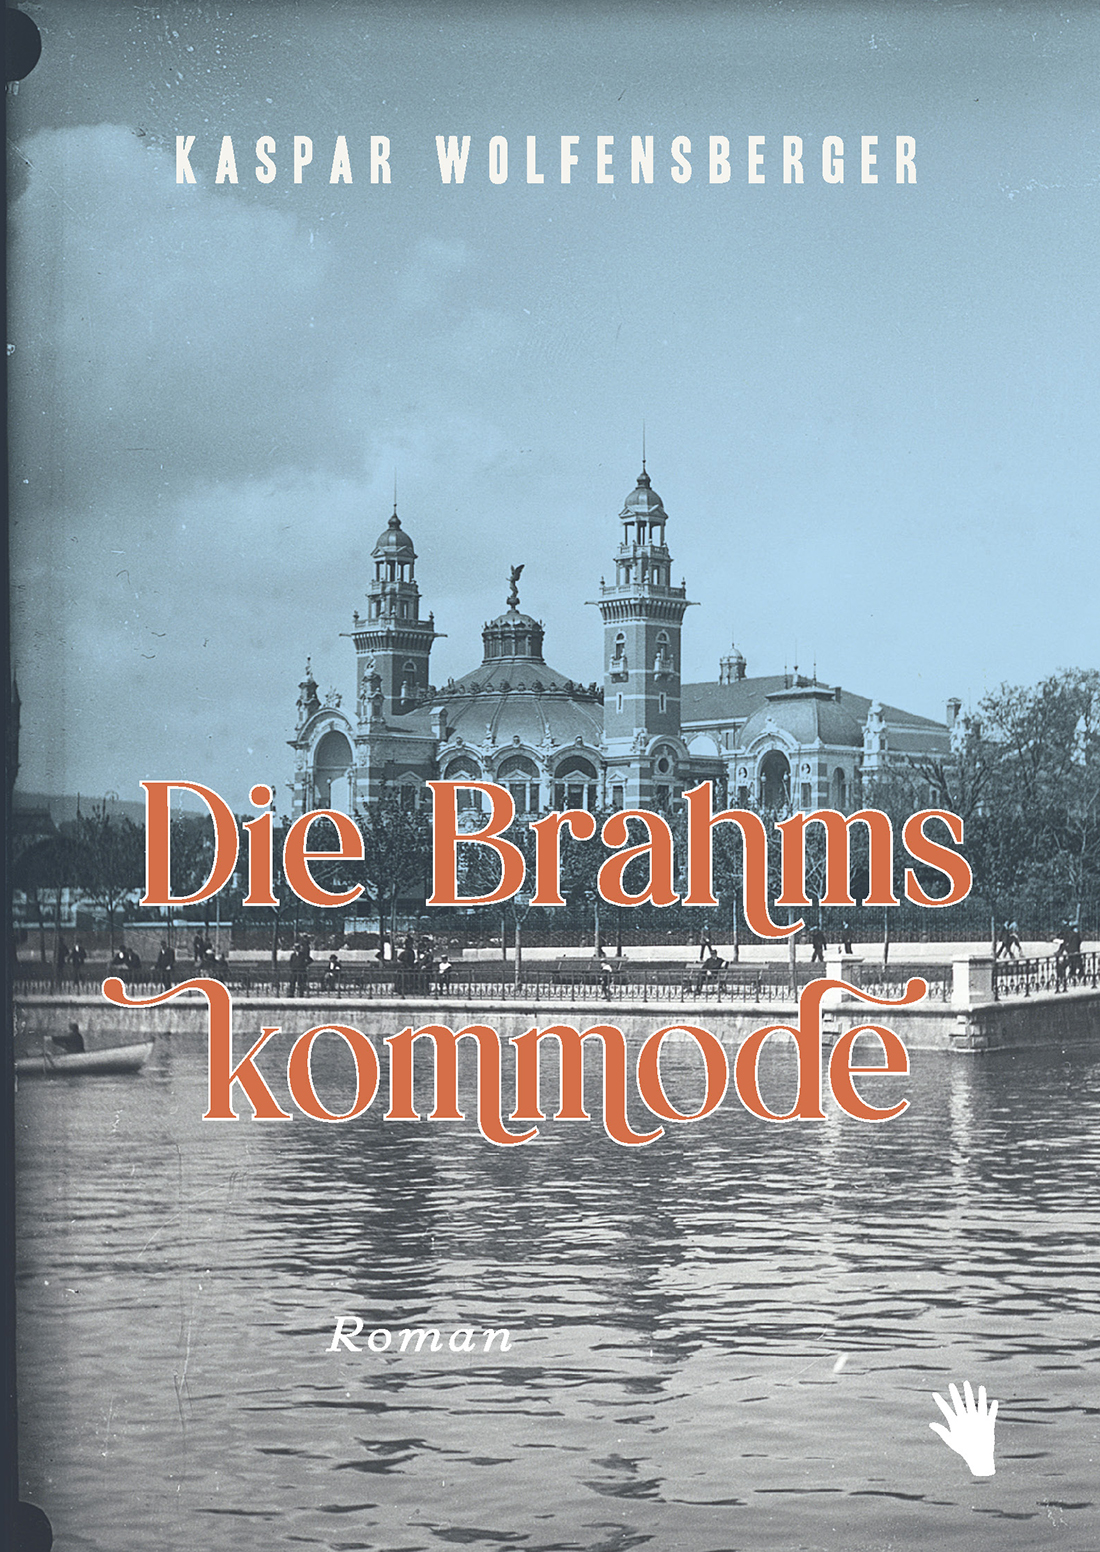 “Die Brahmskommode” by Kaspar Wolfensberger